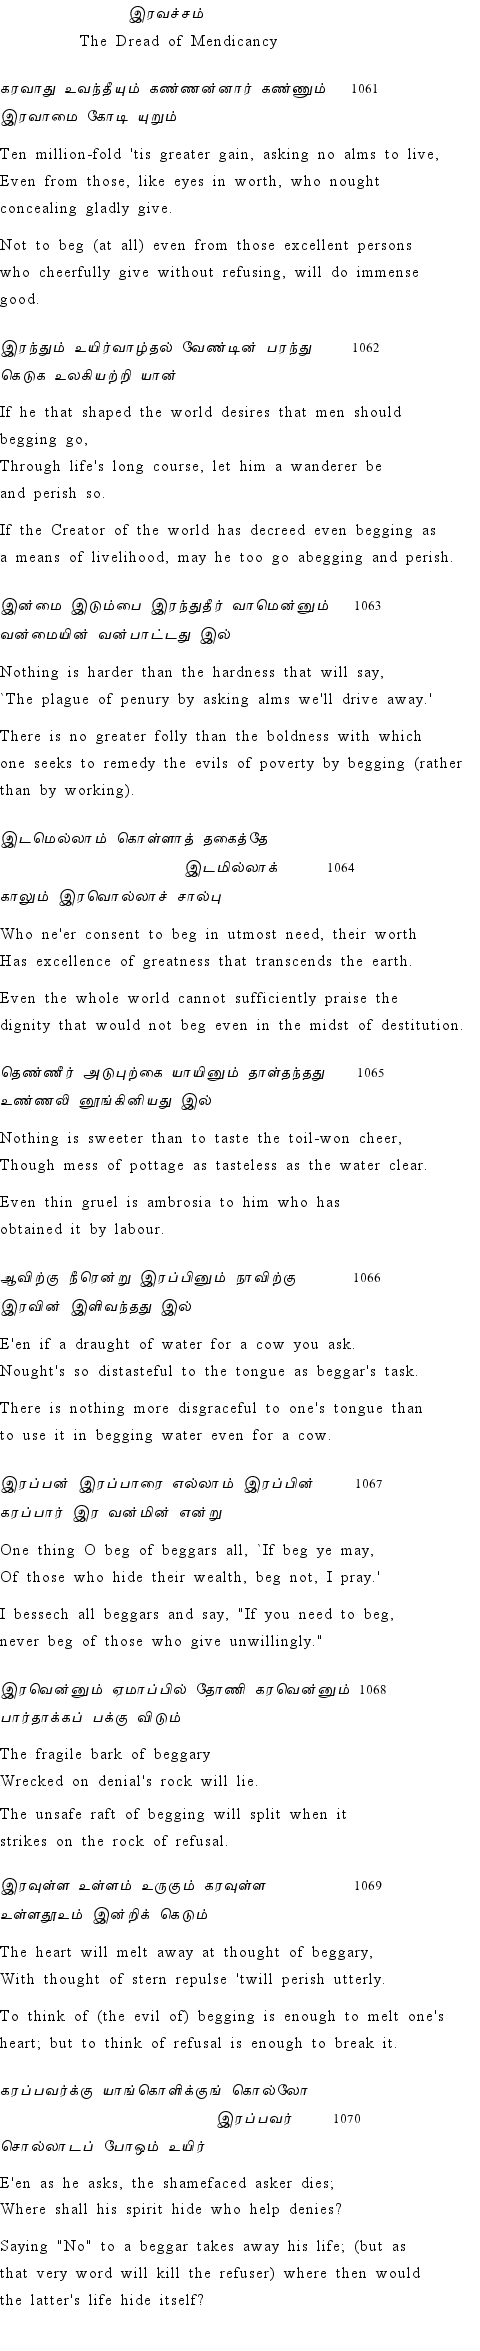 Text of Adhikaram 107